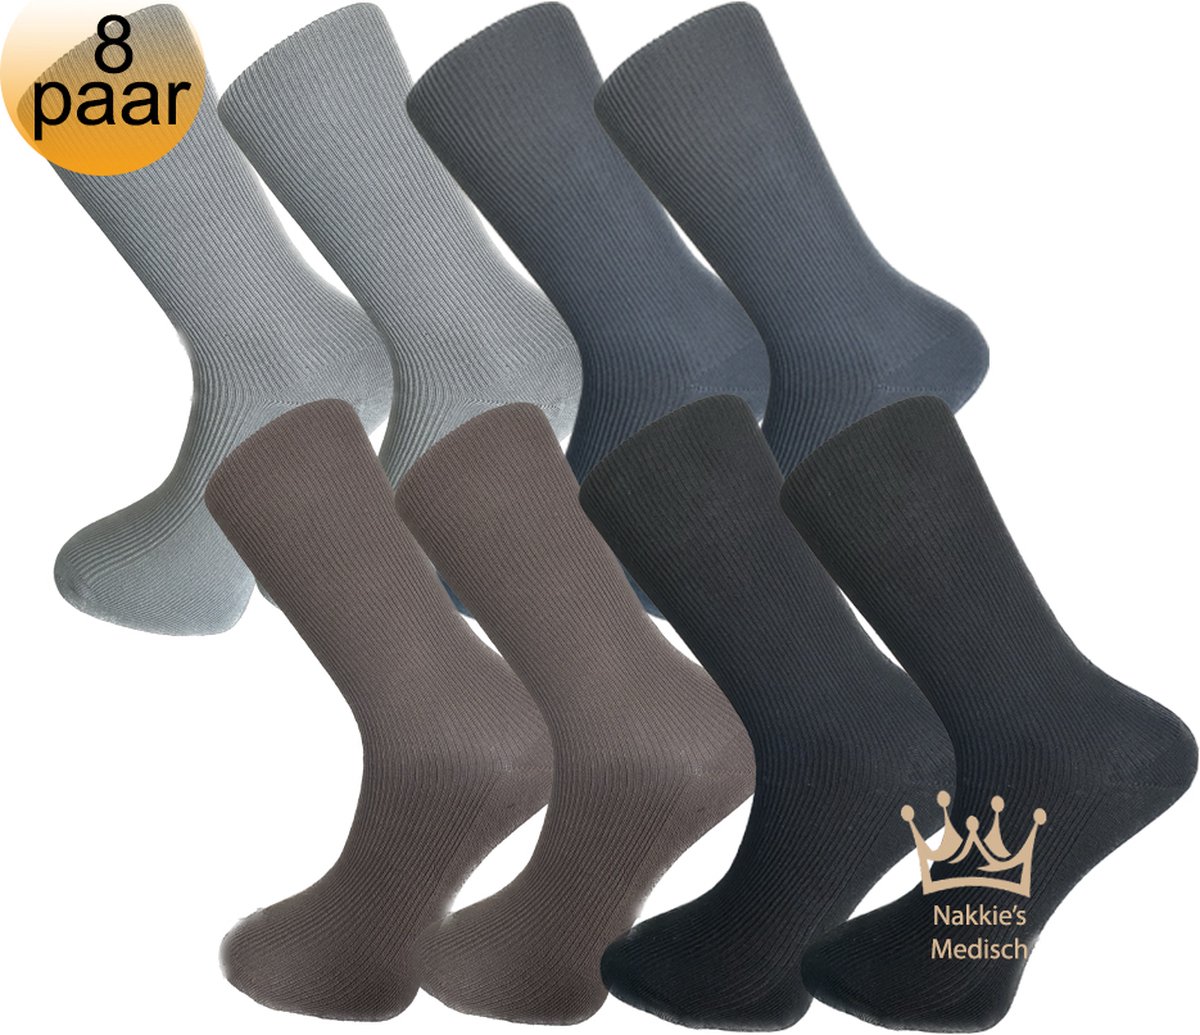 Medische sokken - 100% katoen - 8 paar - Maat 43/46 - Grijs, Antraciet, Bruin en Zwart